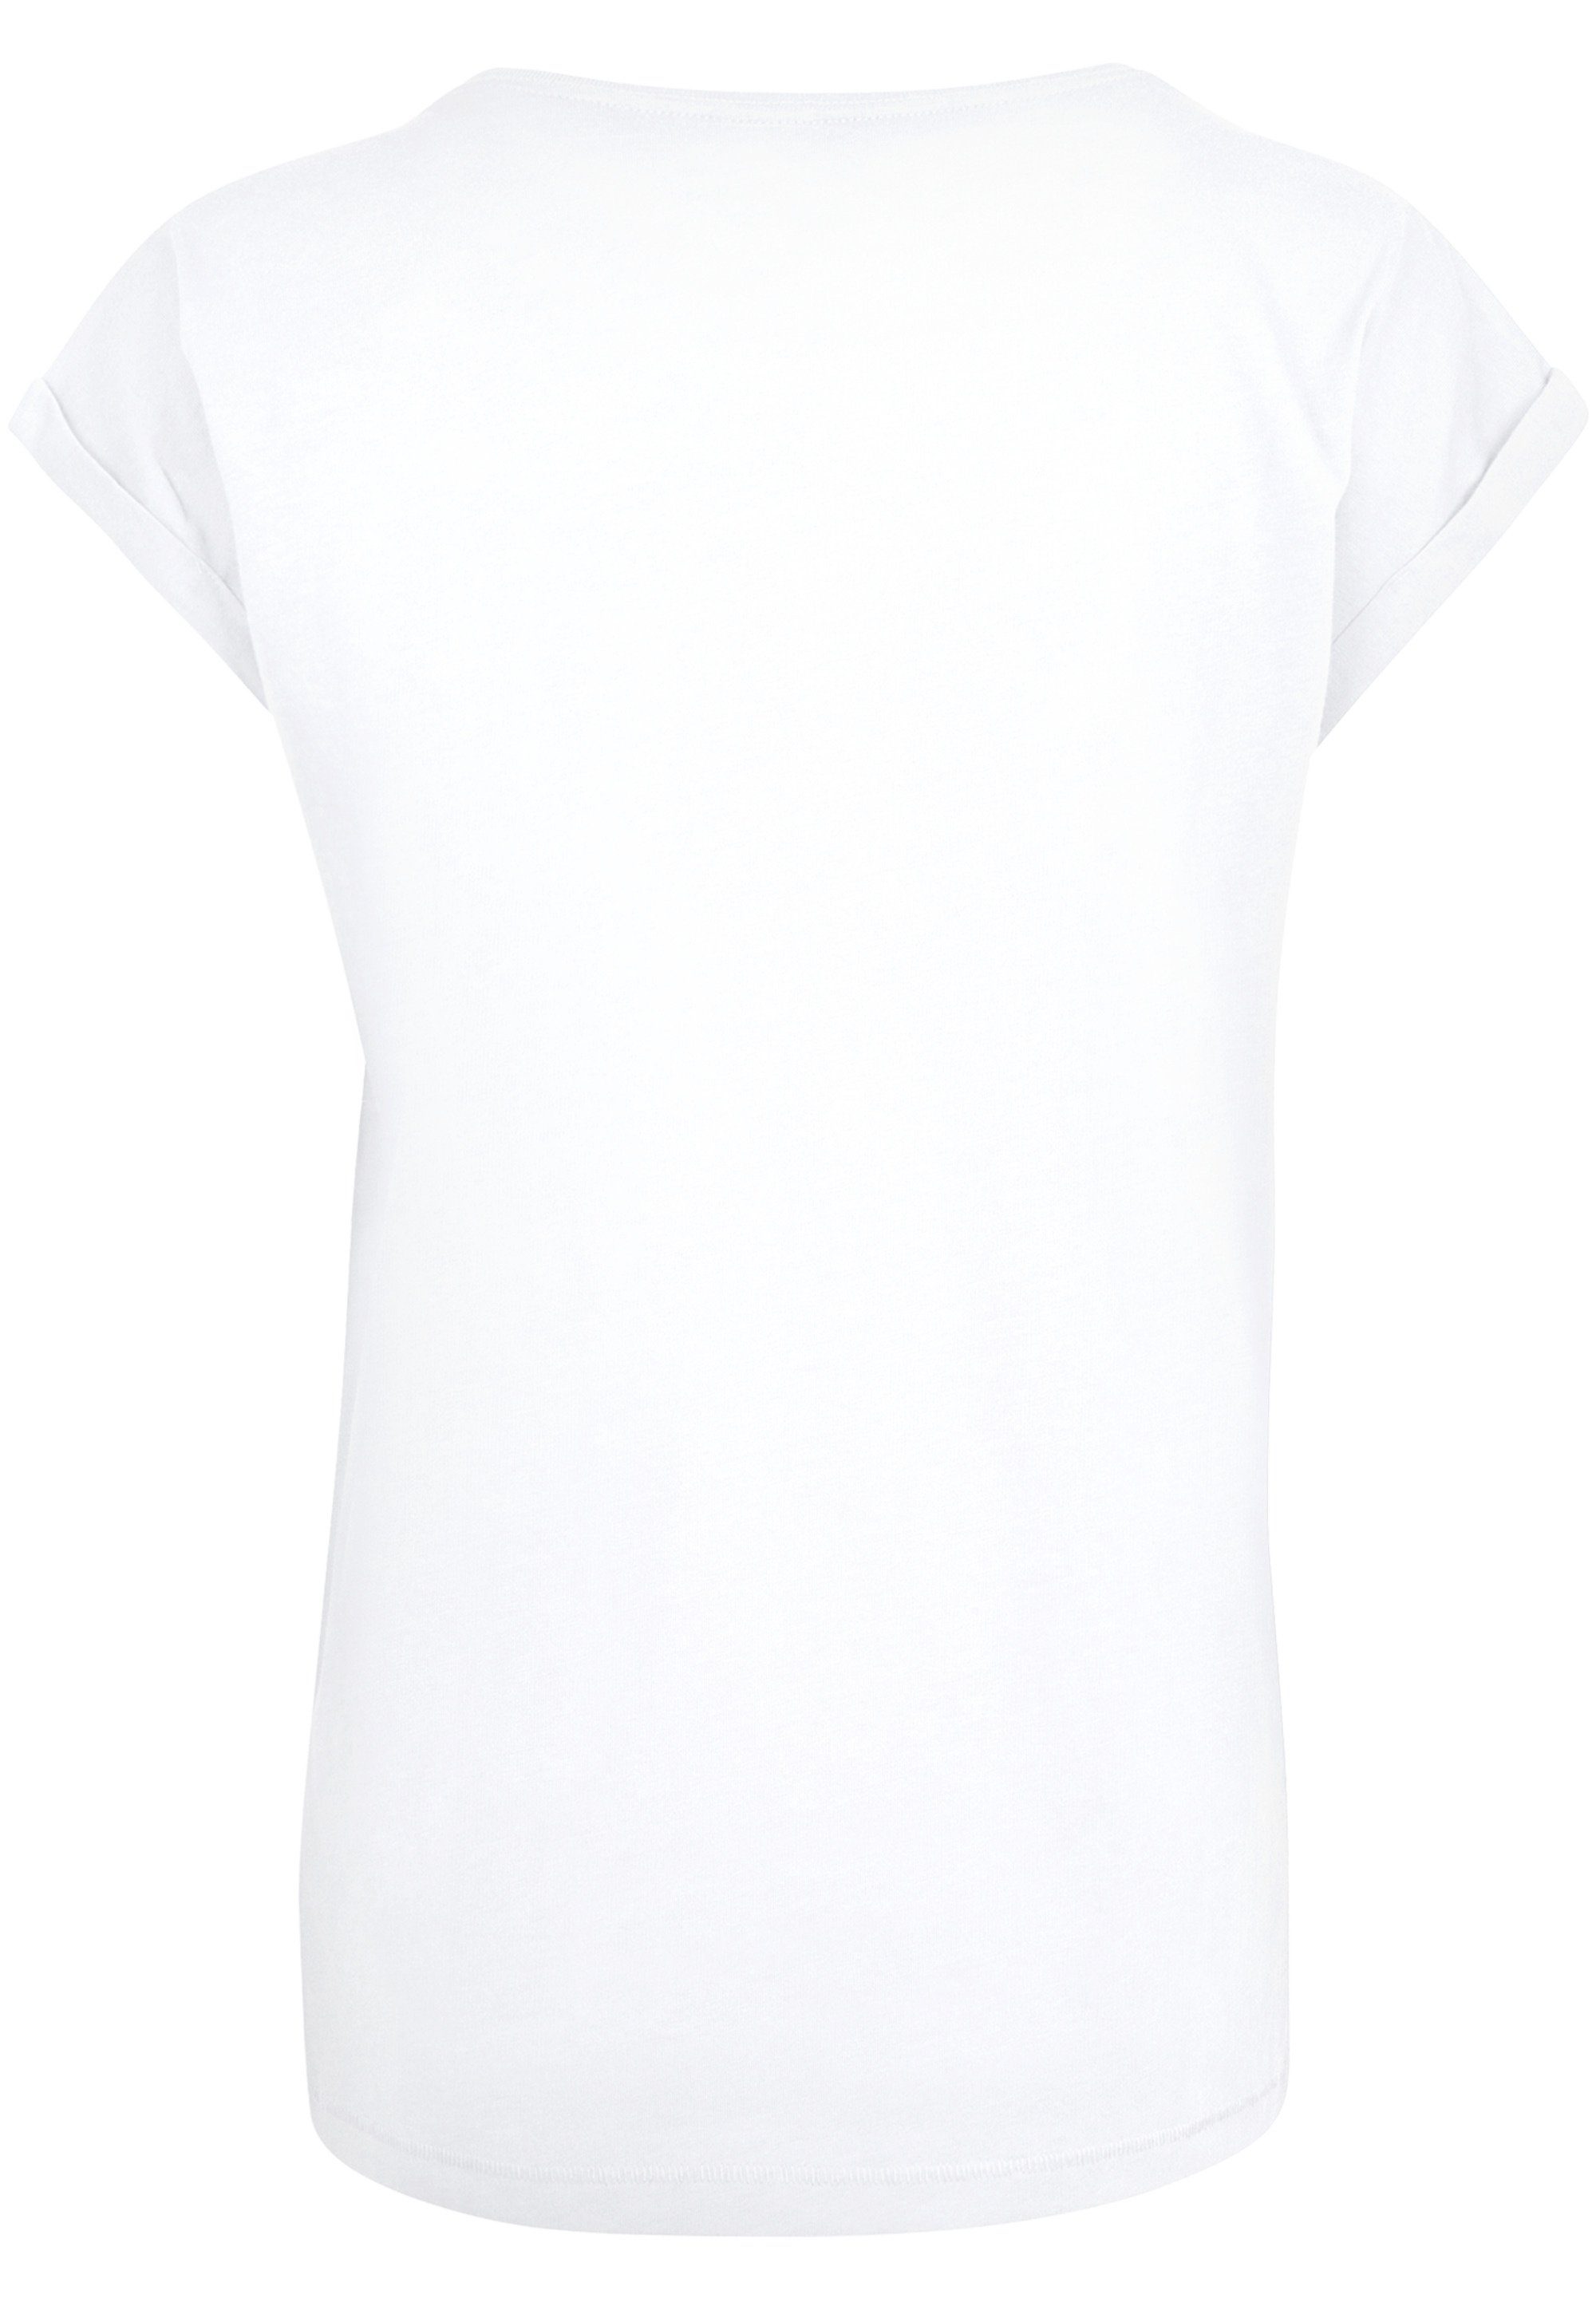 Ferkel Puuh Classic T-Shirt Winnie F4NT4STIC Print Piglet